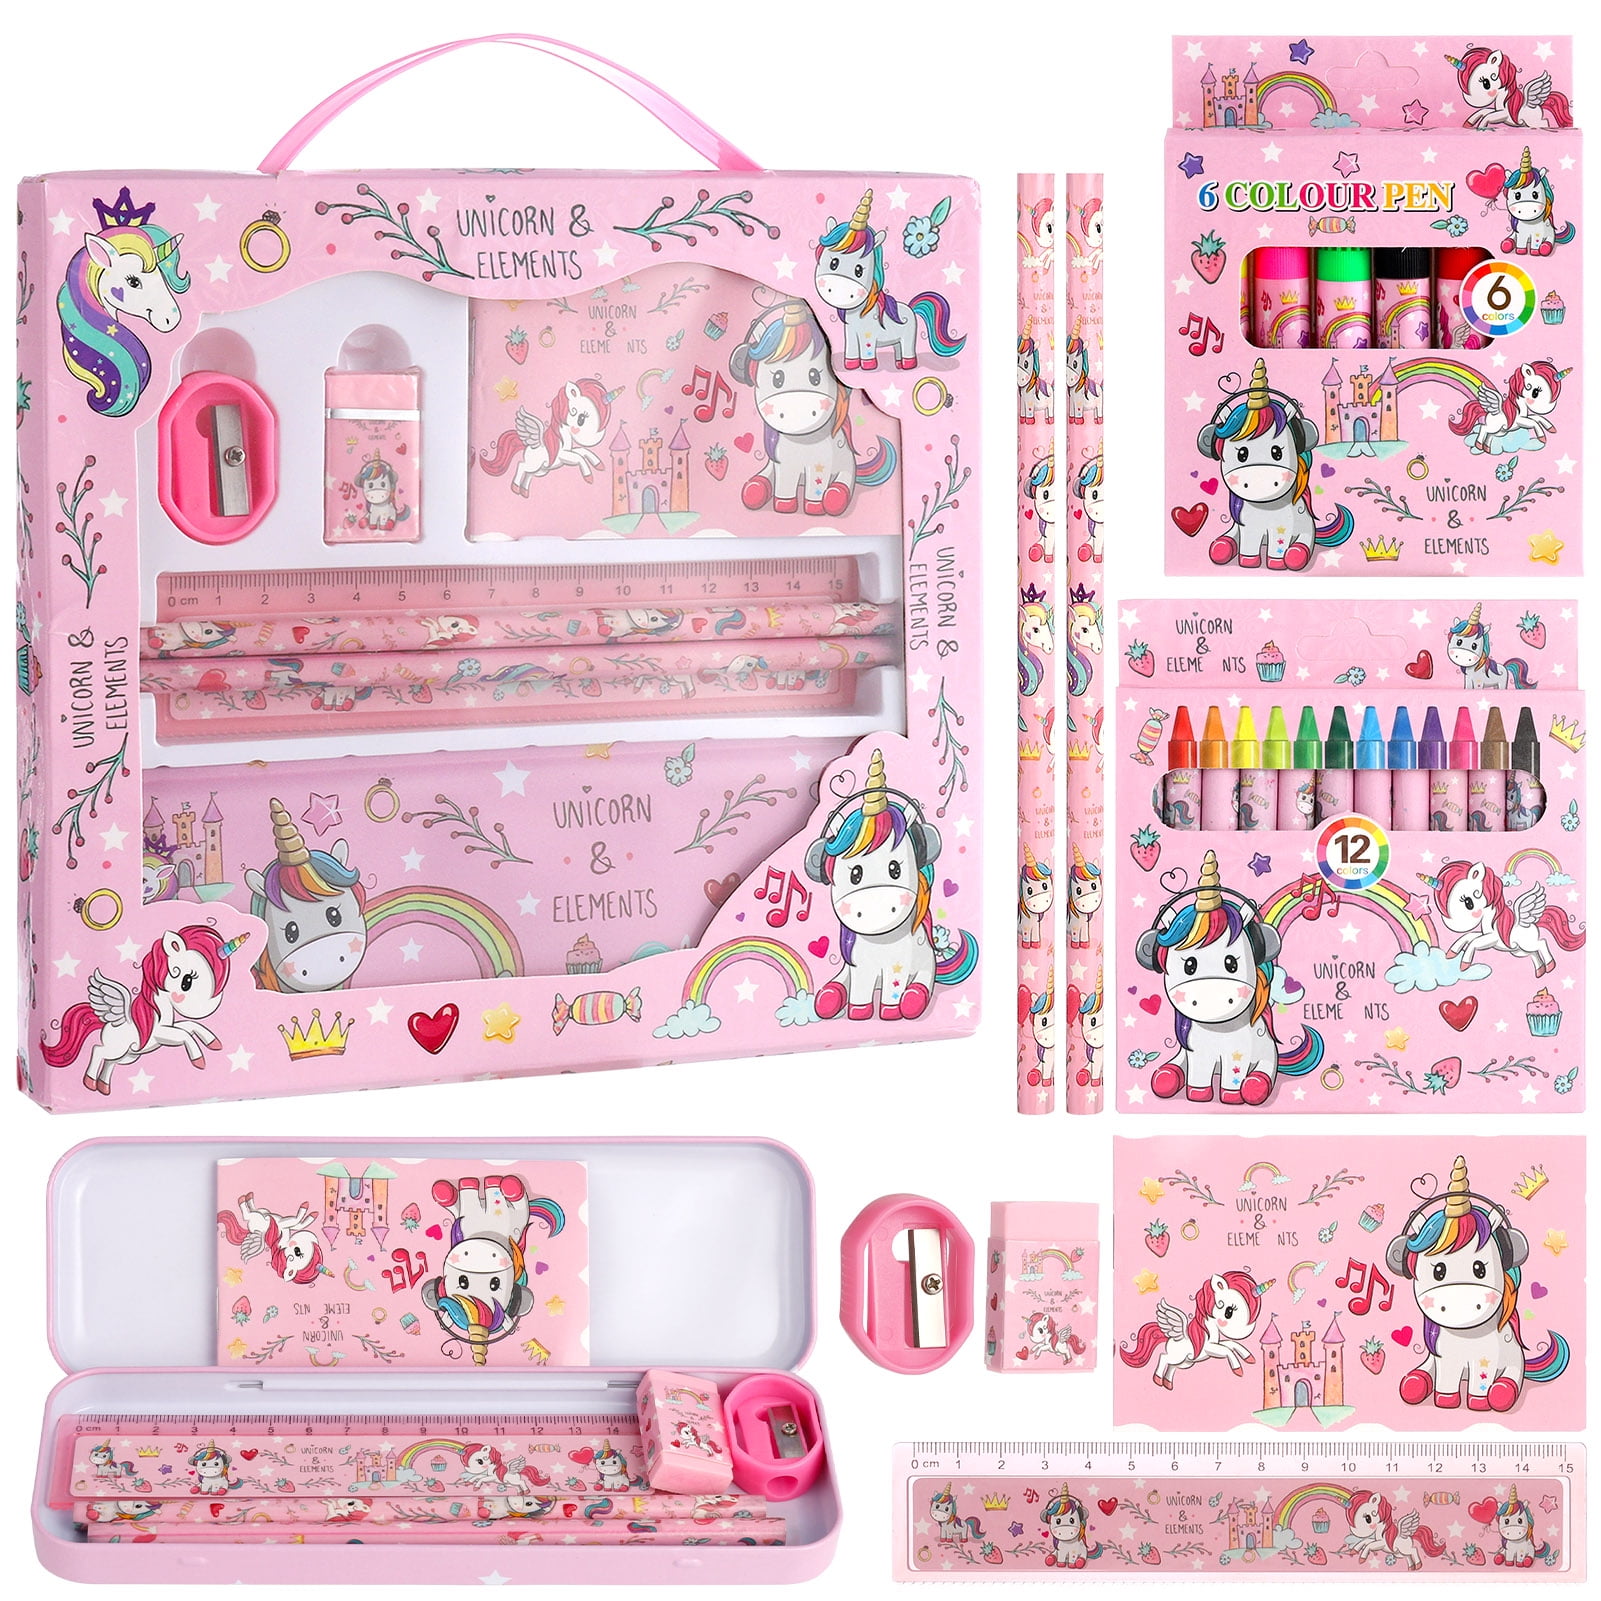  Personalized Unicorn Stationary Set for Girls, Unicorn